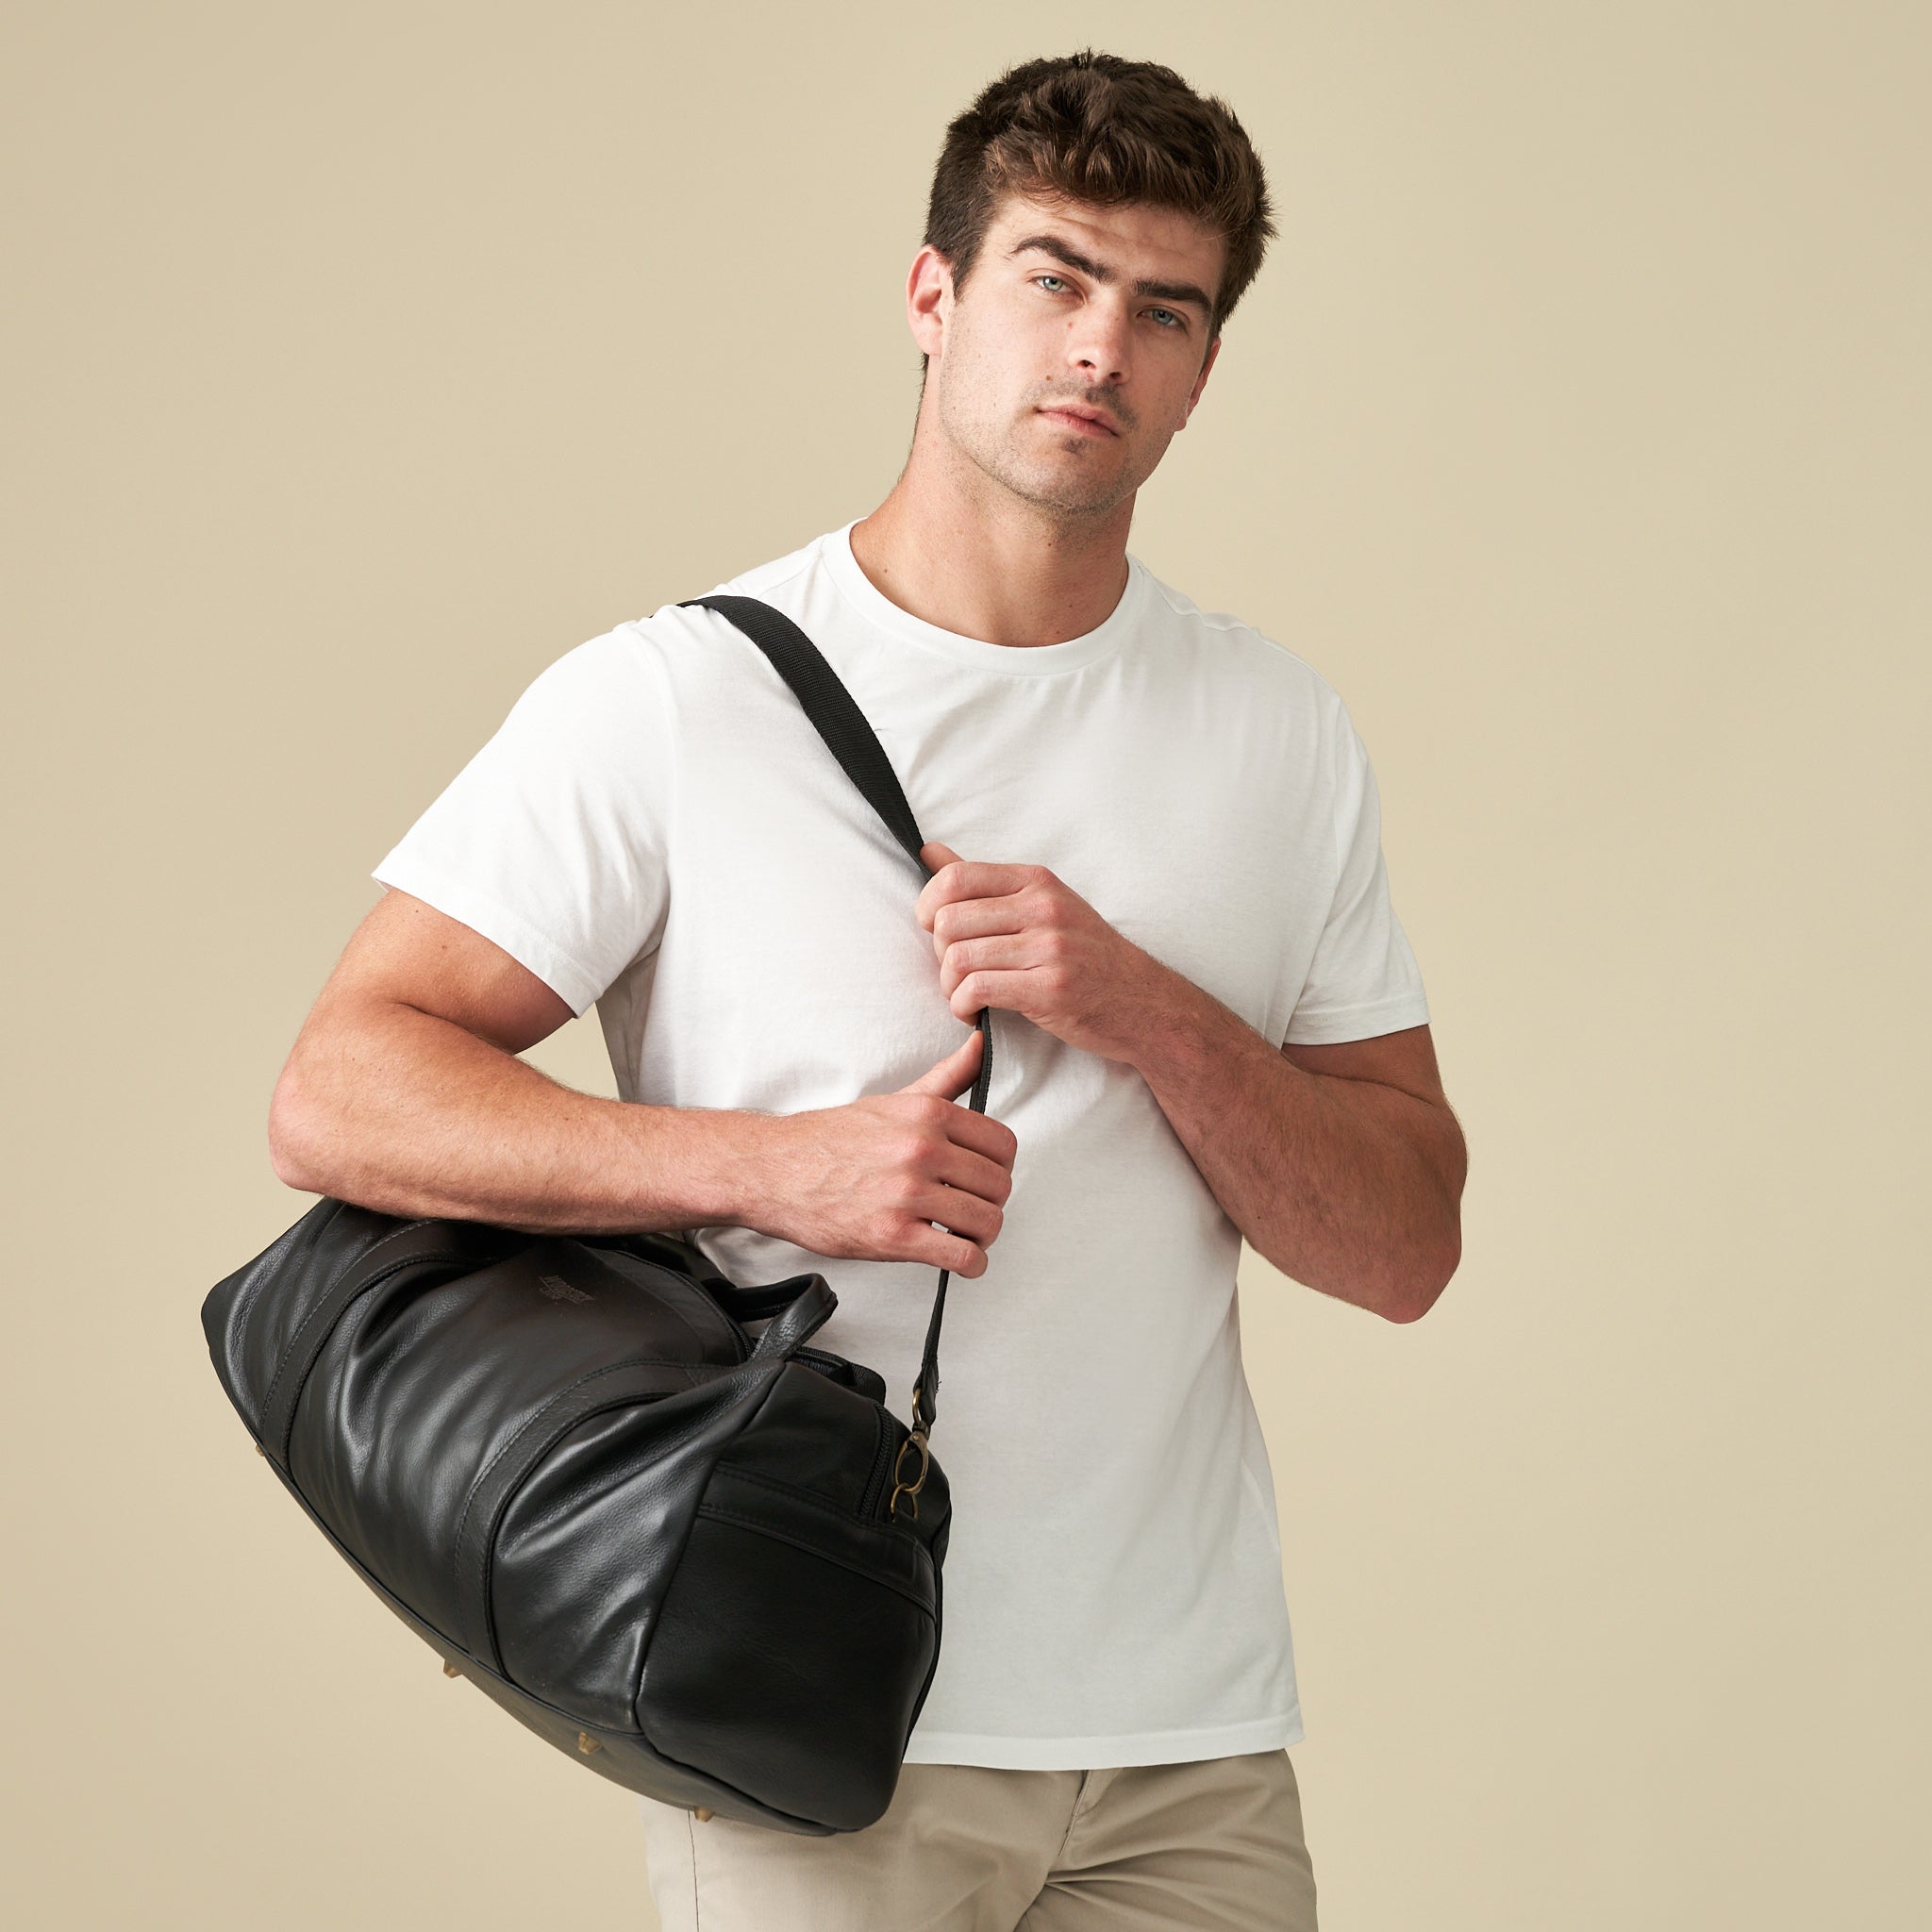 Weekender Duffel Bag with Waterproof Lining &amp; Sneaker Compartment